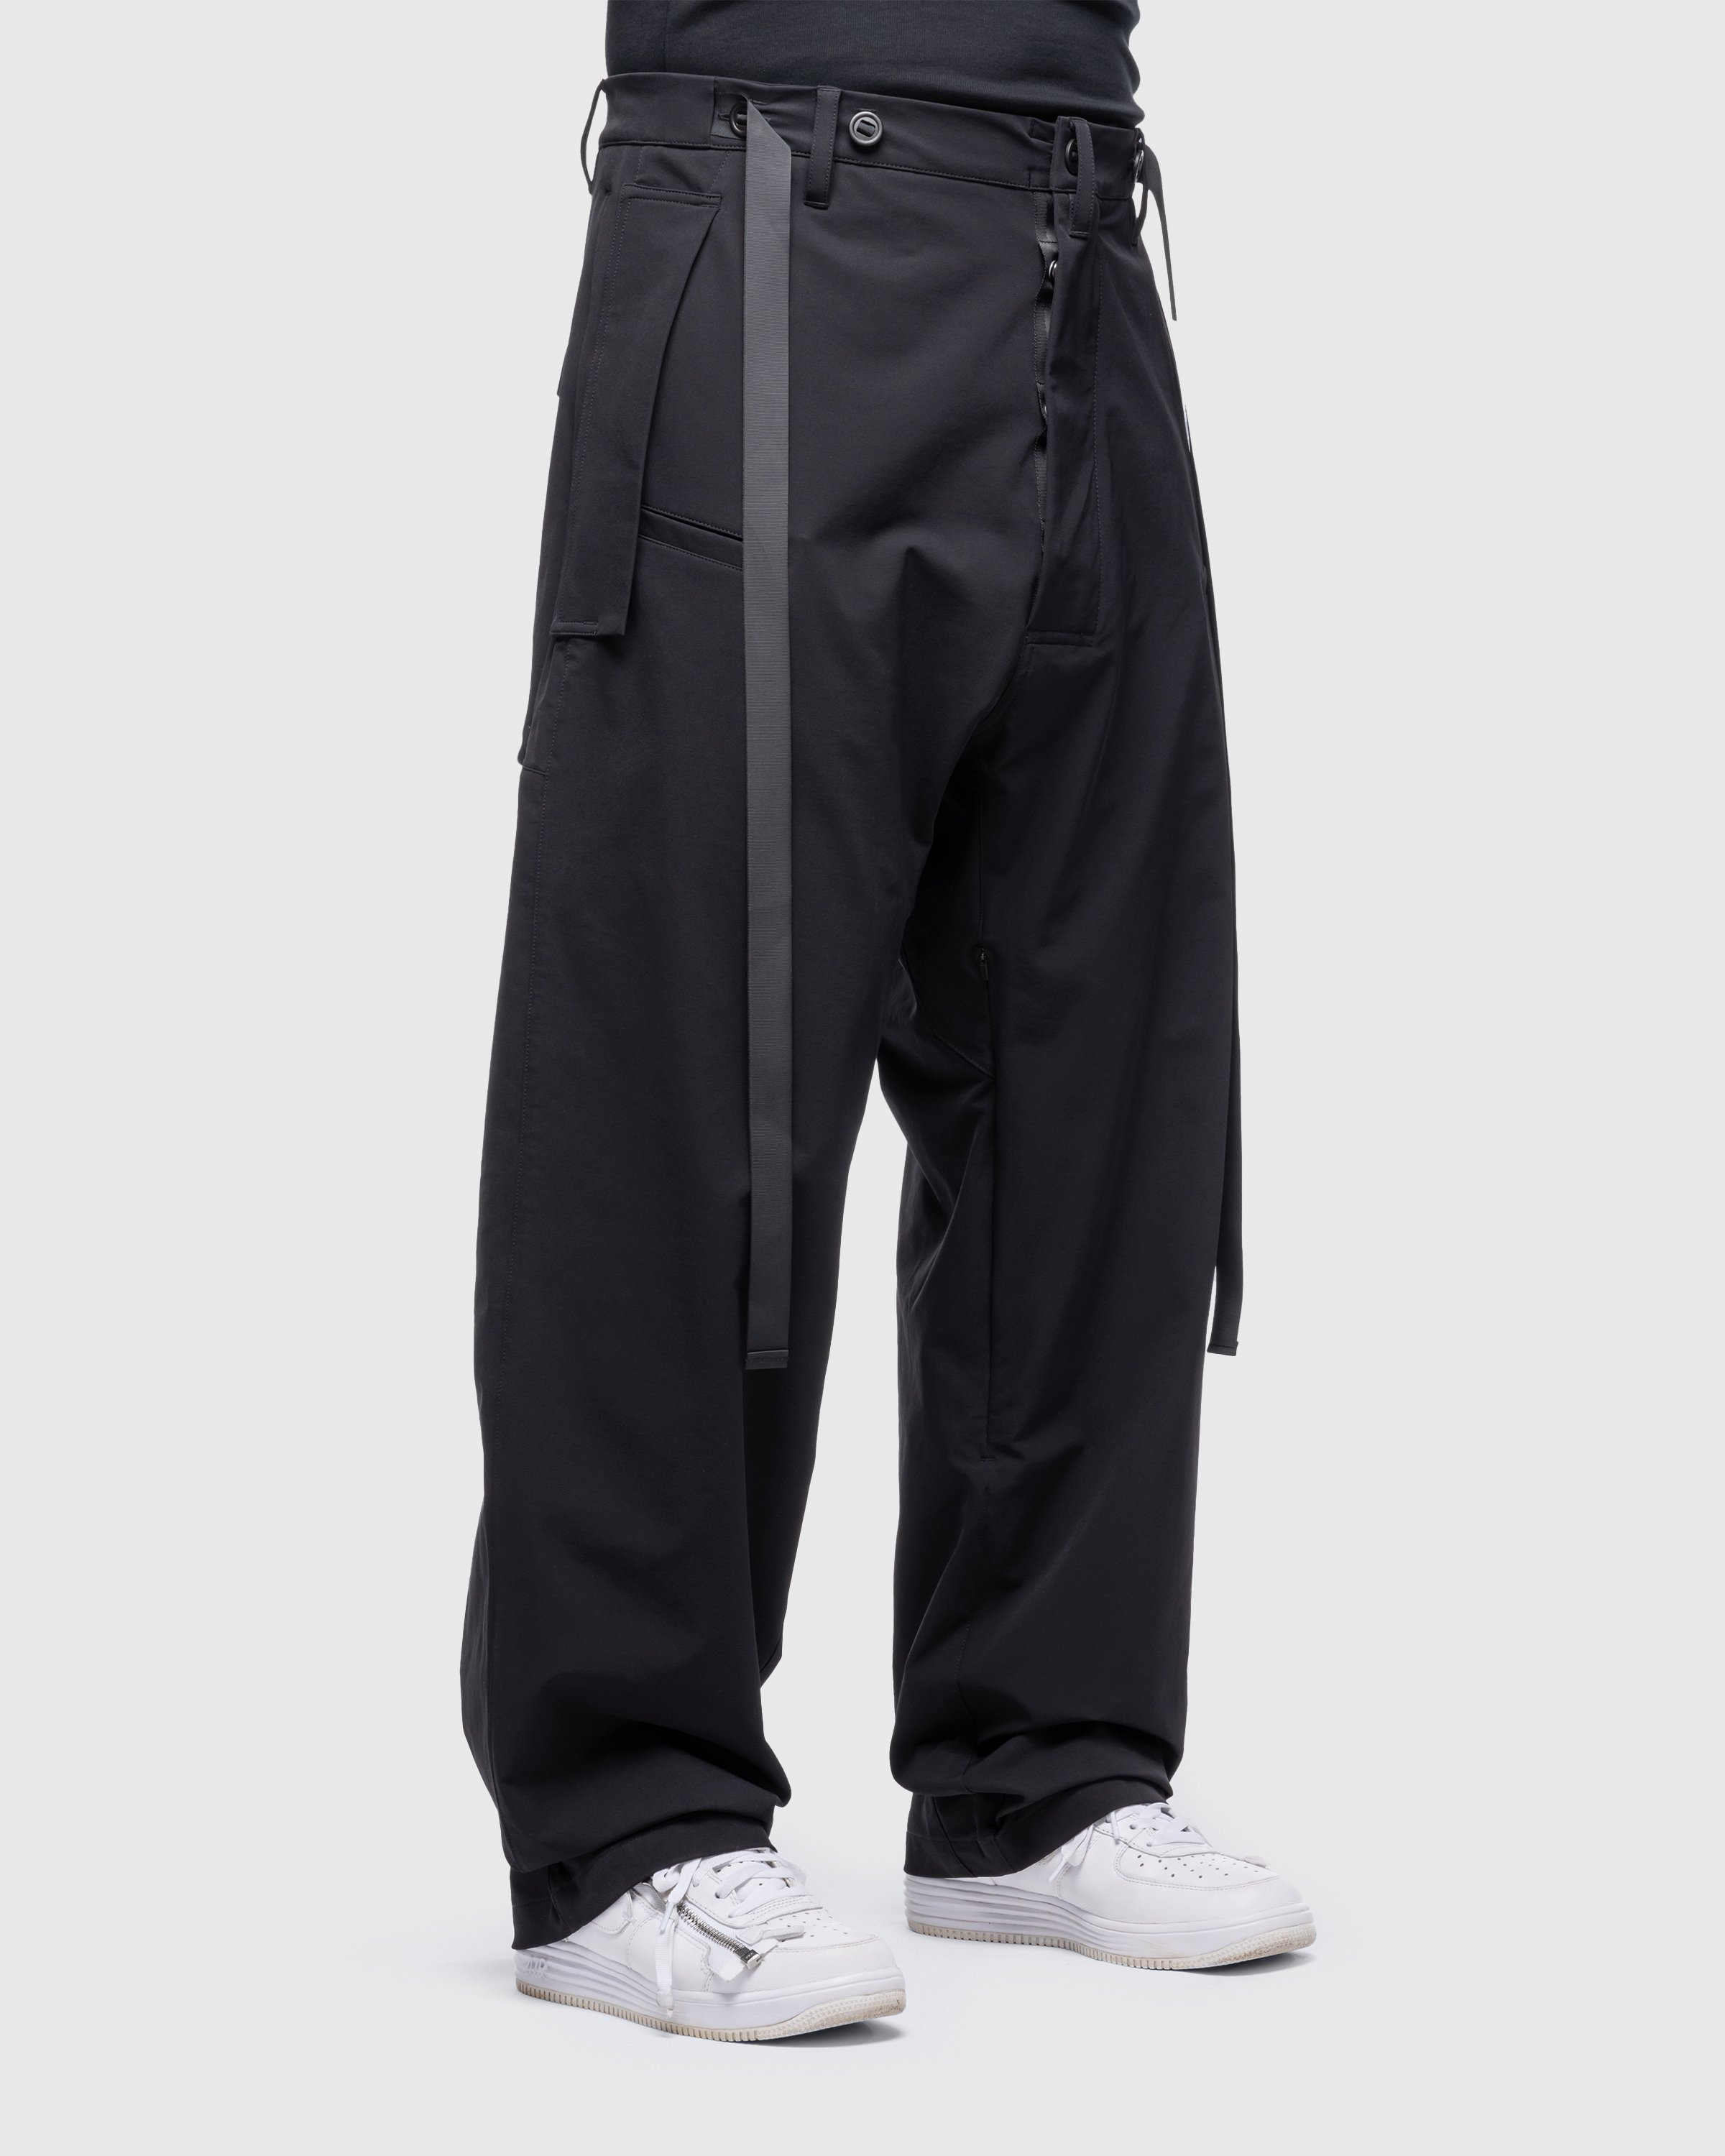 ACRONYM - P46-DS Schoeller Dryskin Vent Pants Black - Clothing - Black - Image 3